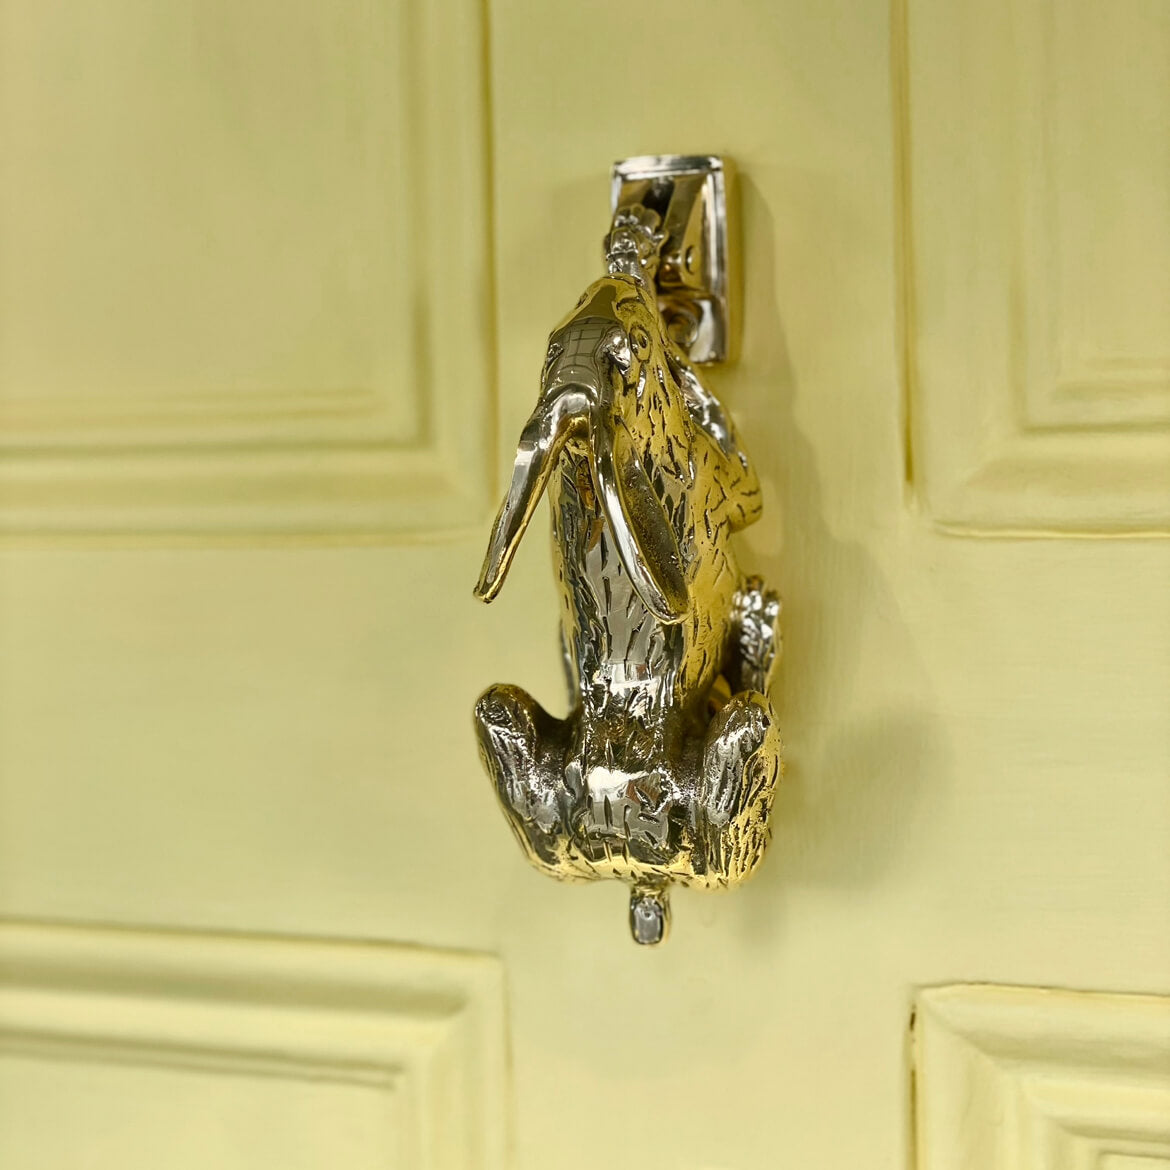 Brass Hare door knocker on yellow door seen front above